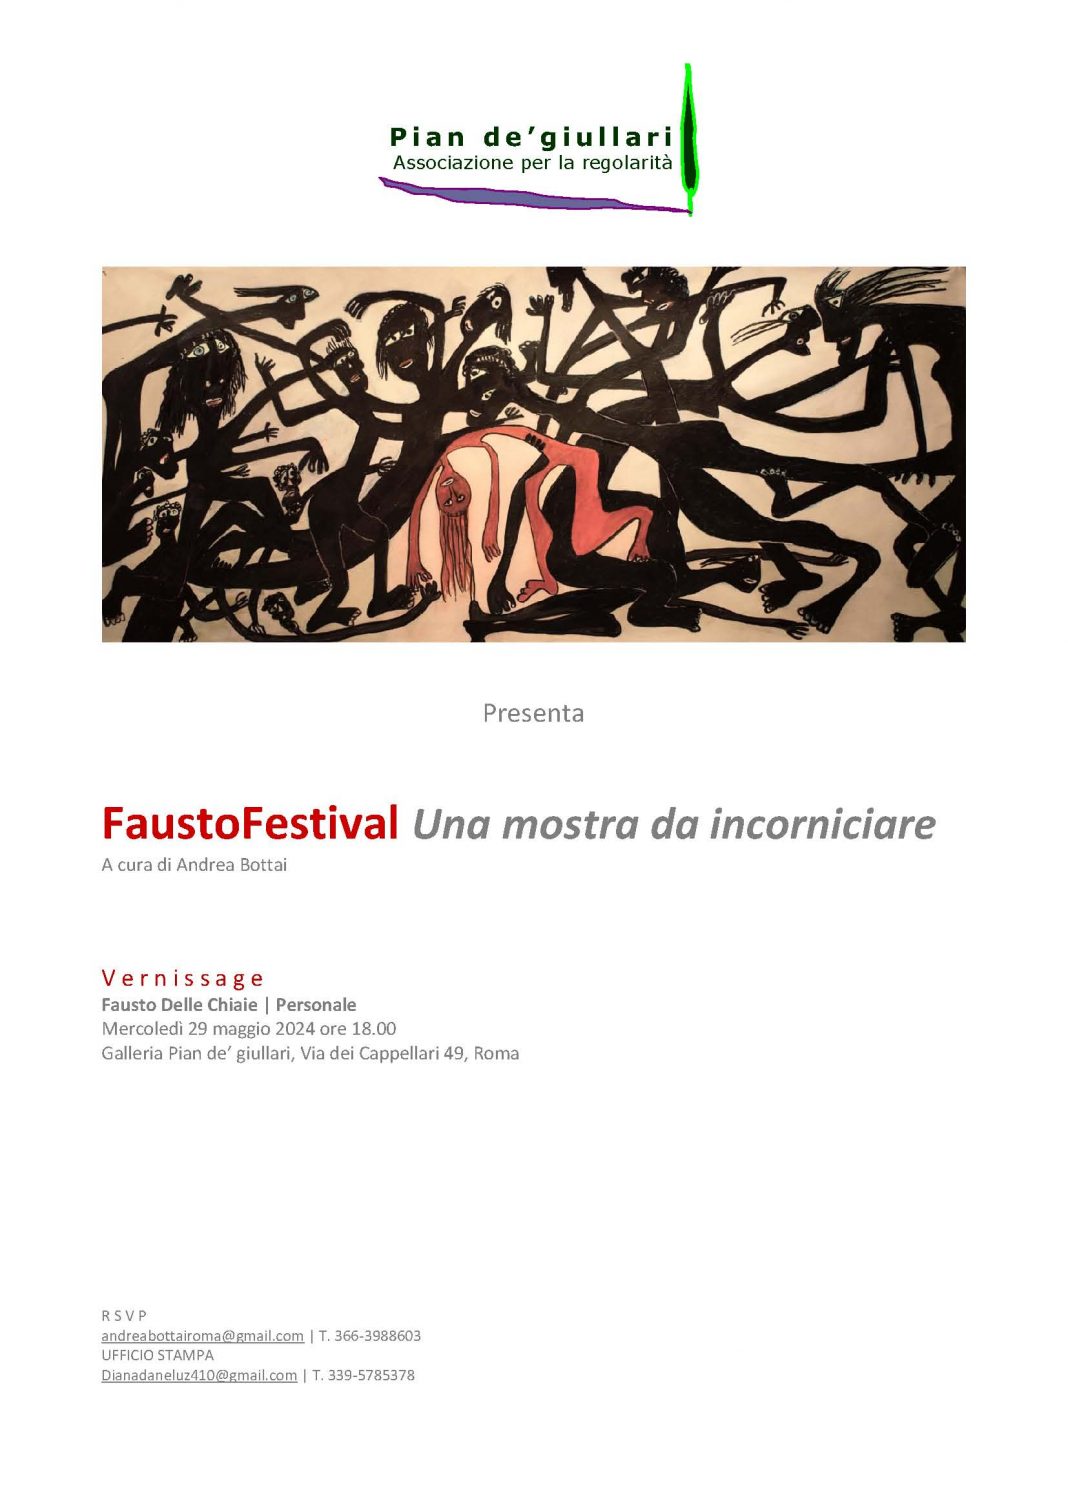 FaustoFestival. Una mostra da incorniciarehttps://www.exibart.com/repository/media/formidable/11/img/e47/Invito-Vernissage-FaustoFestival-29-maggio-2024-ore-18.00-1068x1510.jpg